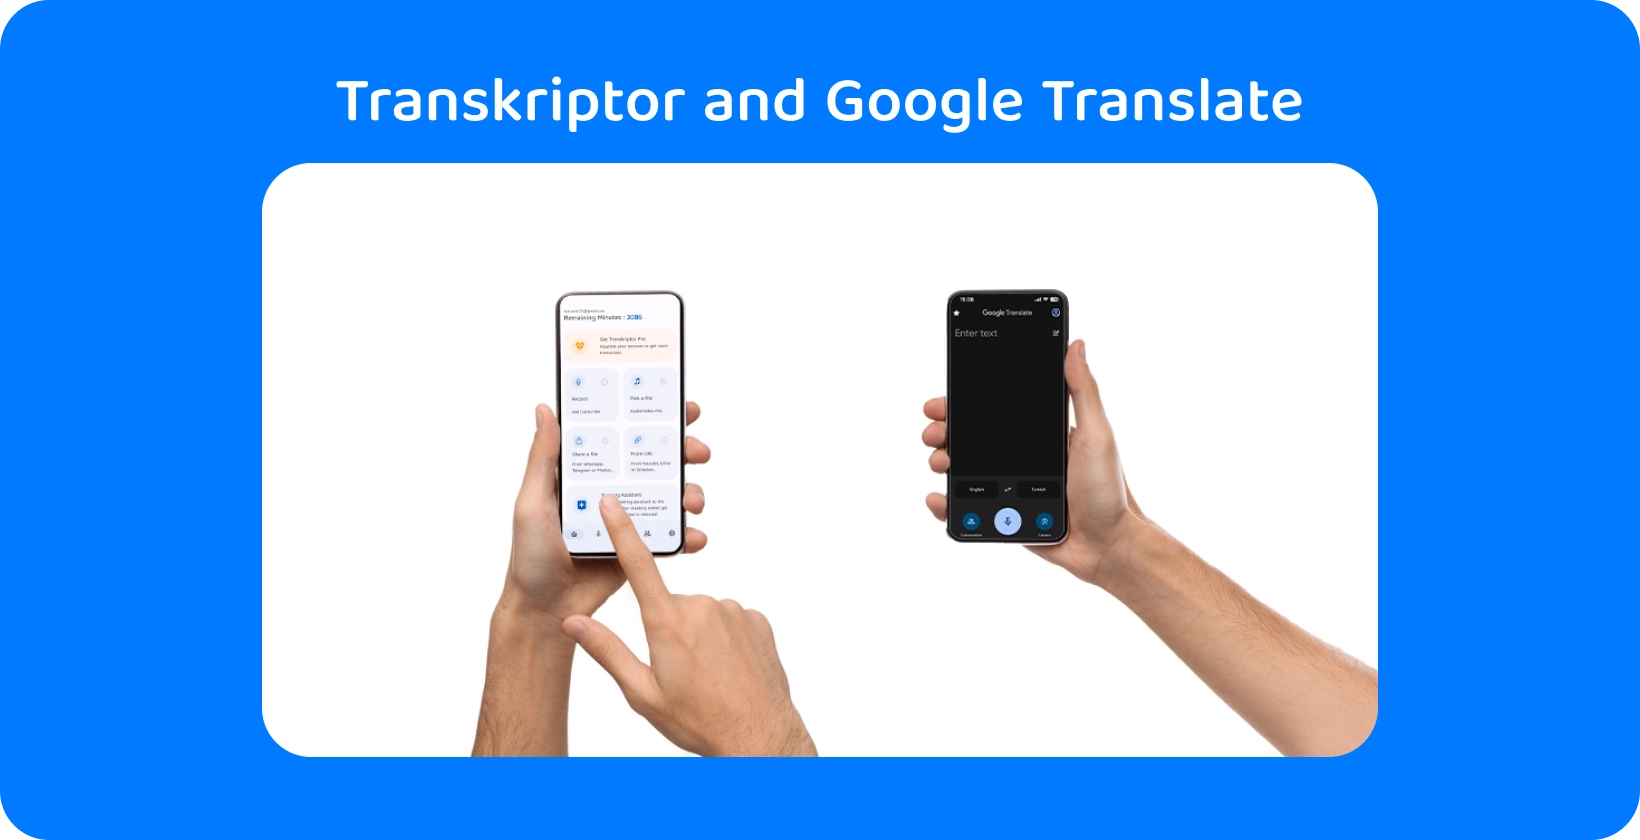 Dvě ruce drží smartphony s Transkriptor a Google Translate, které předvádějí přepis a překlad zvuku.